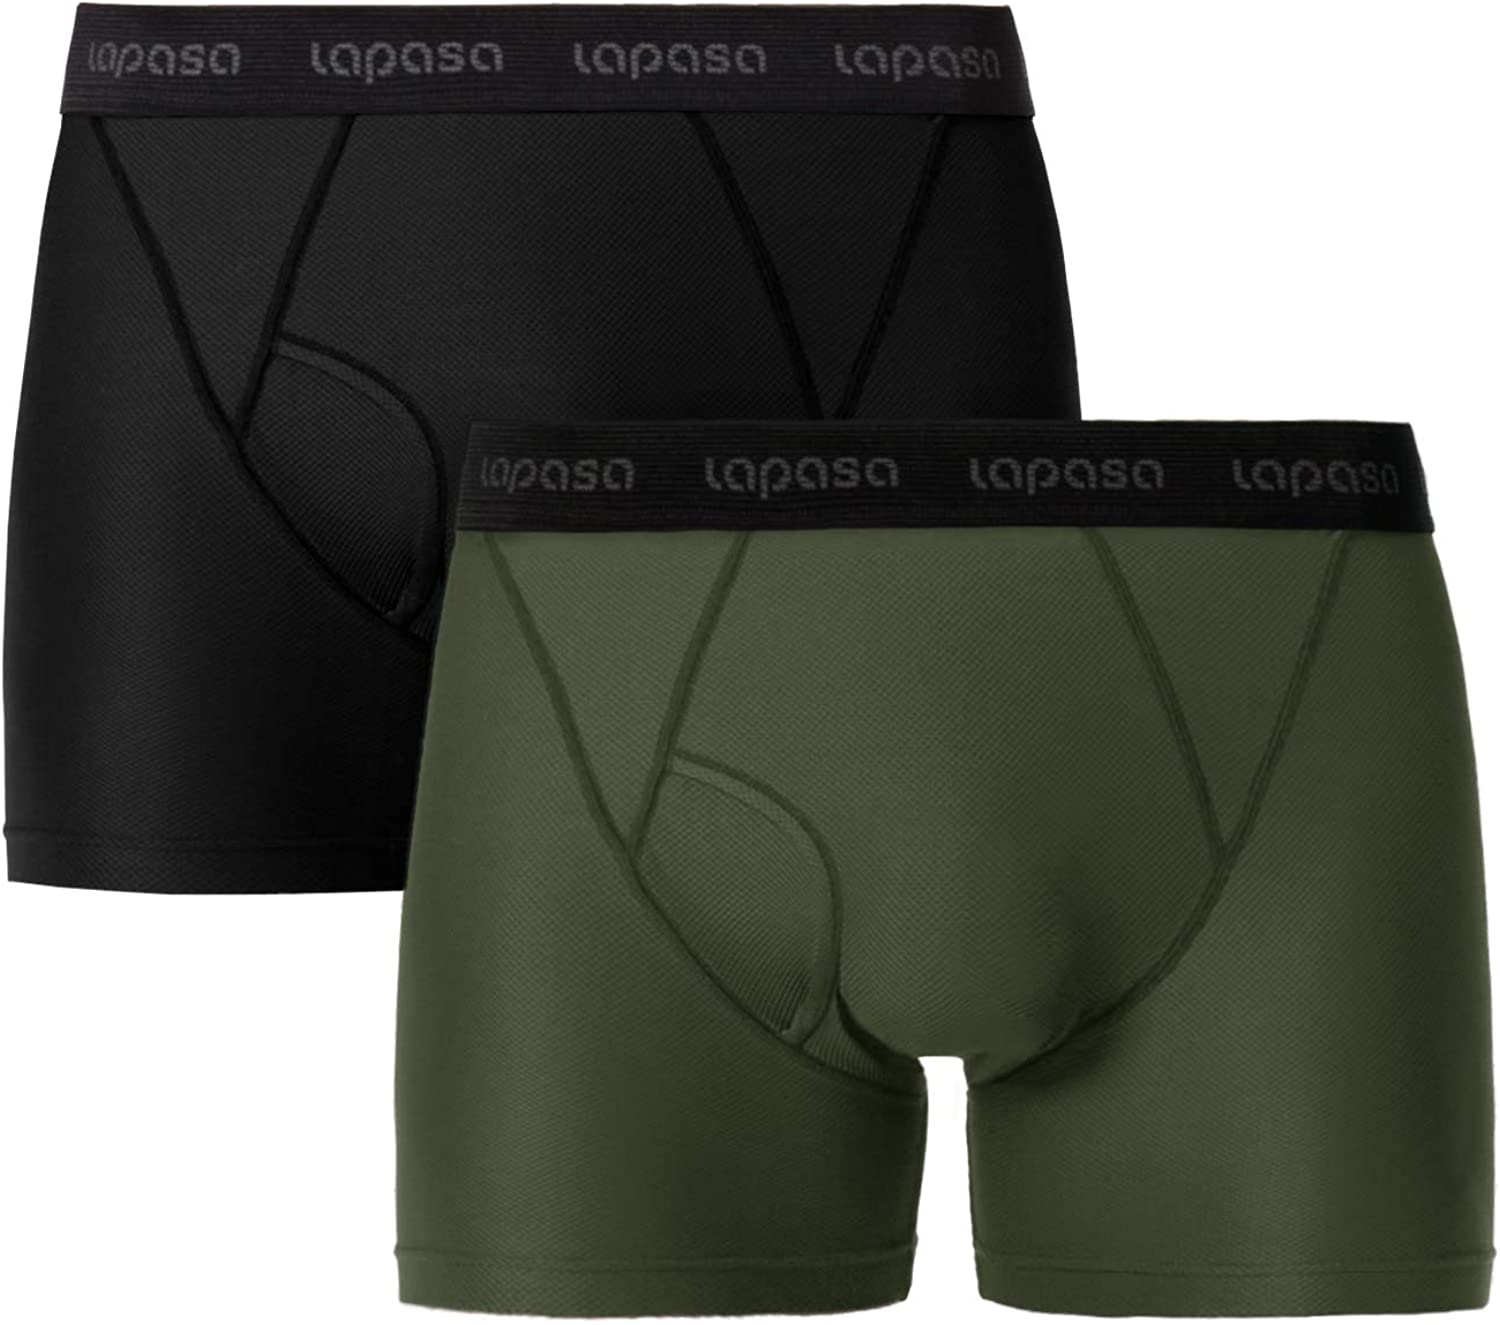 LAPASA Men's Sports Boxer Shorts Travel Quick Dry Trunks, Mesh